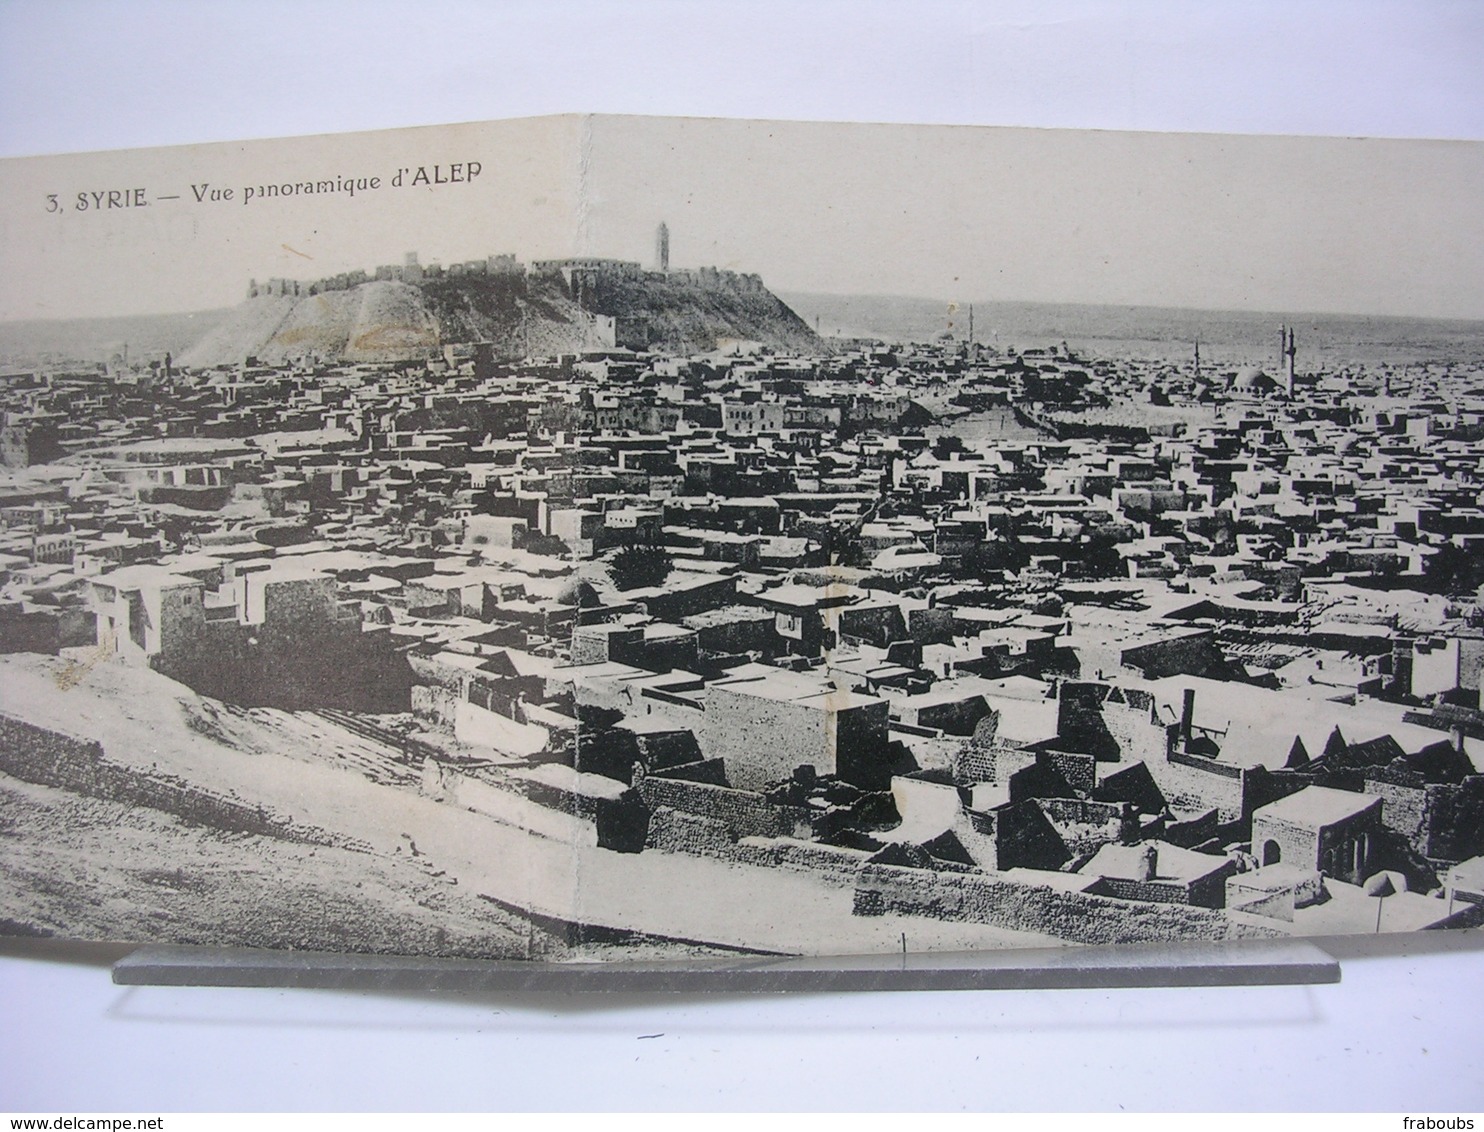 SYRIE - ALEP - VUE PANORAMIQUE (CARTE DOUBLE) + L'EMIR MOUDEHEM + CRUE DU KOUEK DU 6 FEVRIER 1922 - LOT DE 3 CARTES - Syrien